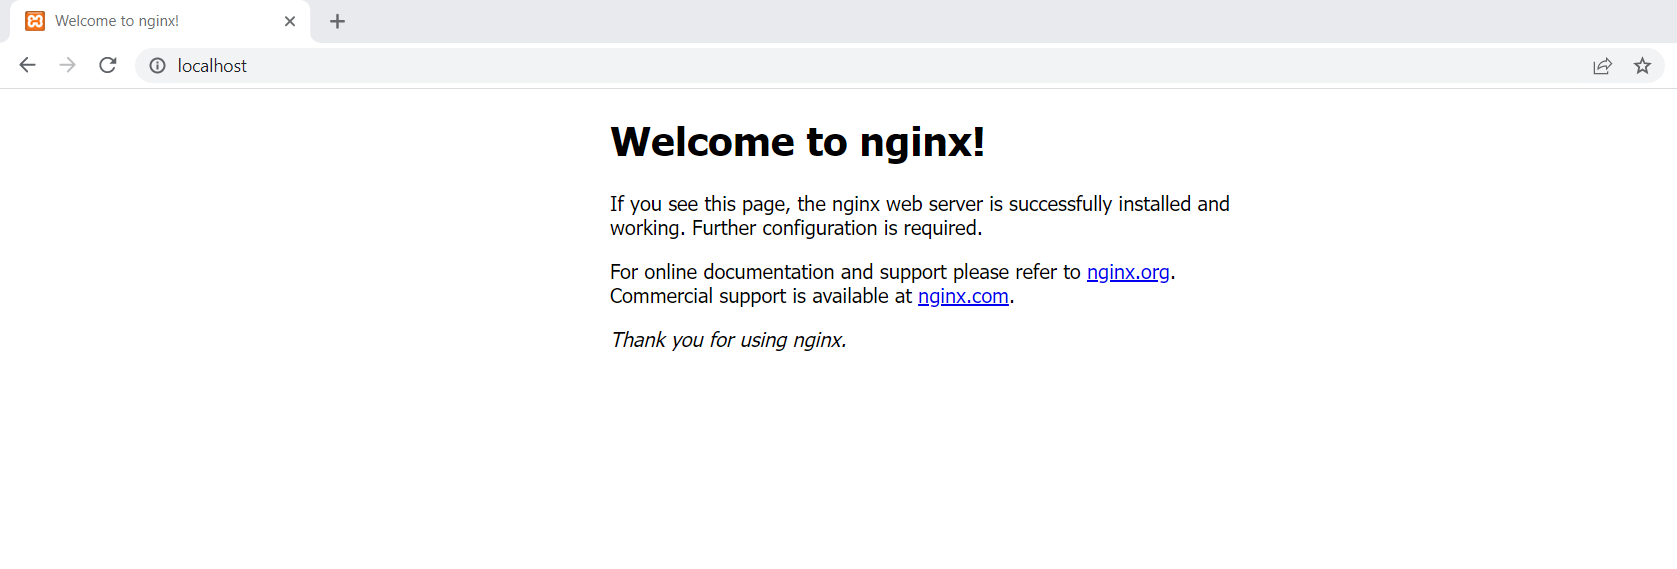 Inicio de Nginx en el navegador